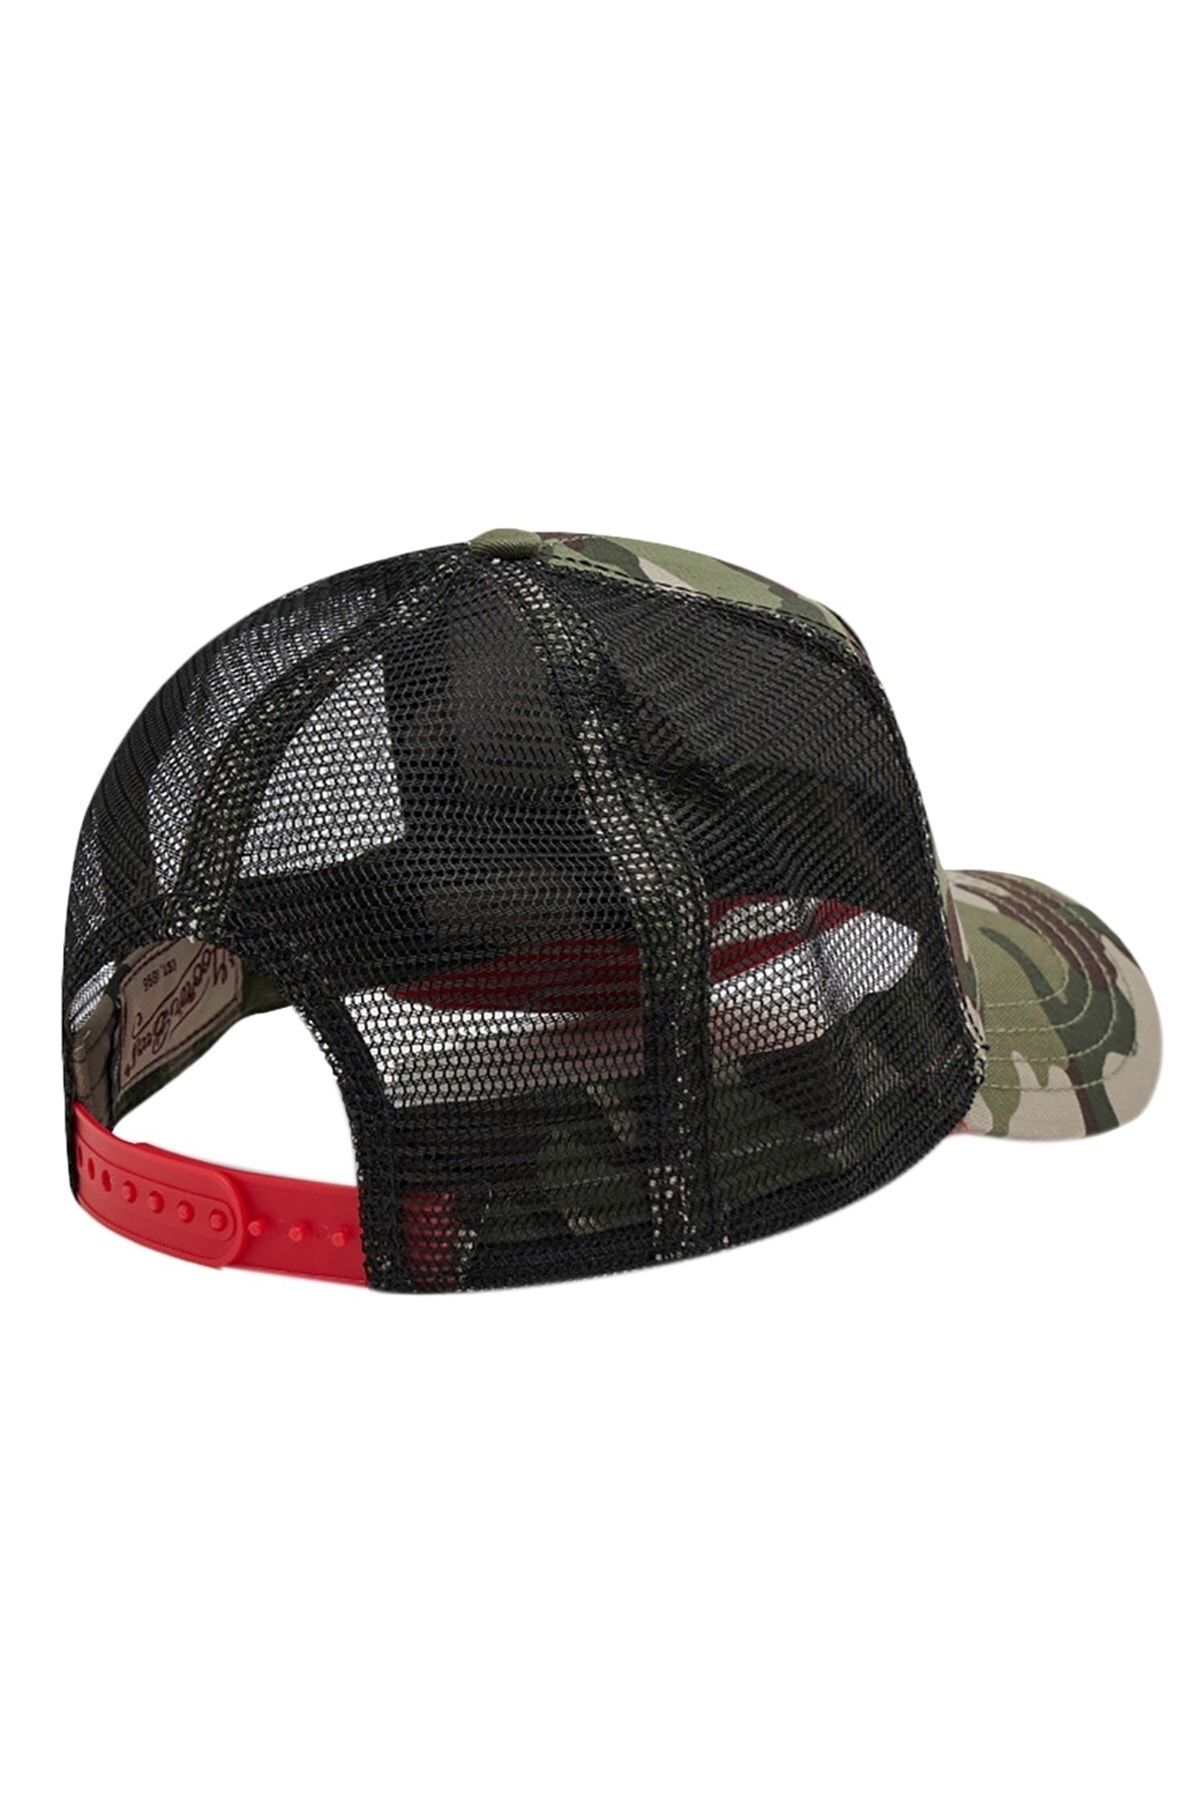 کلاه کپ طرح پلنگ سیاه یونیسکس گورین براس Goorin Bros (برند آمریکا)